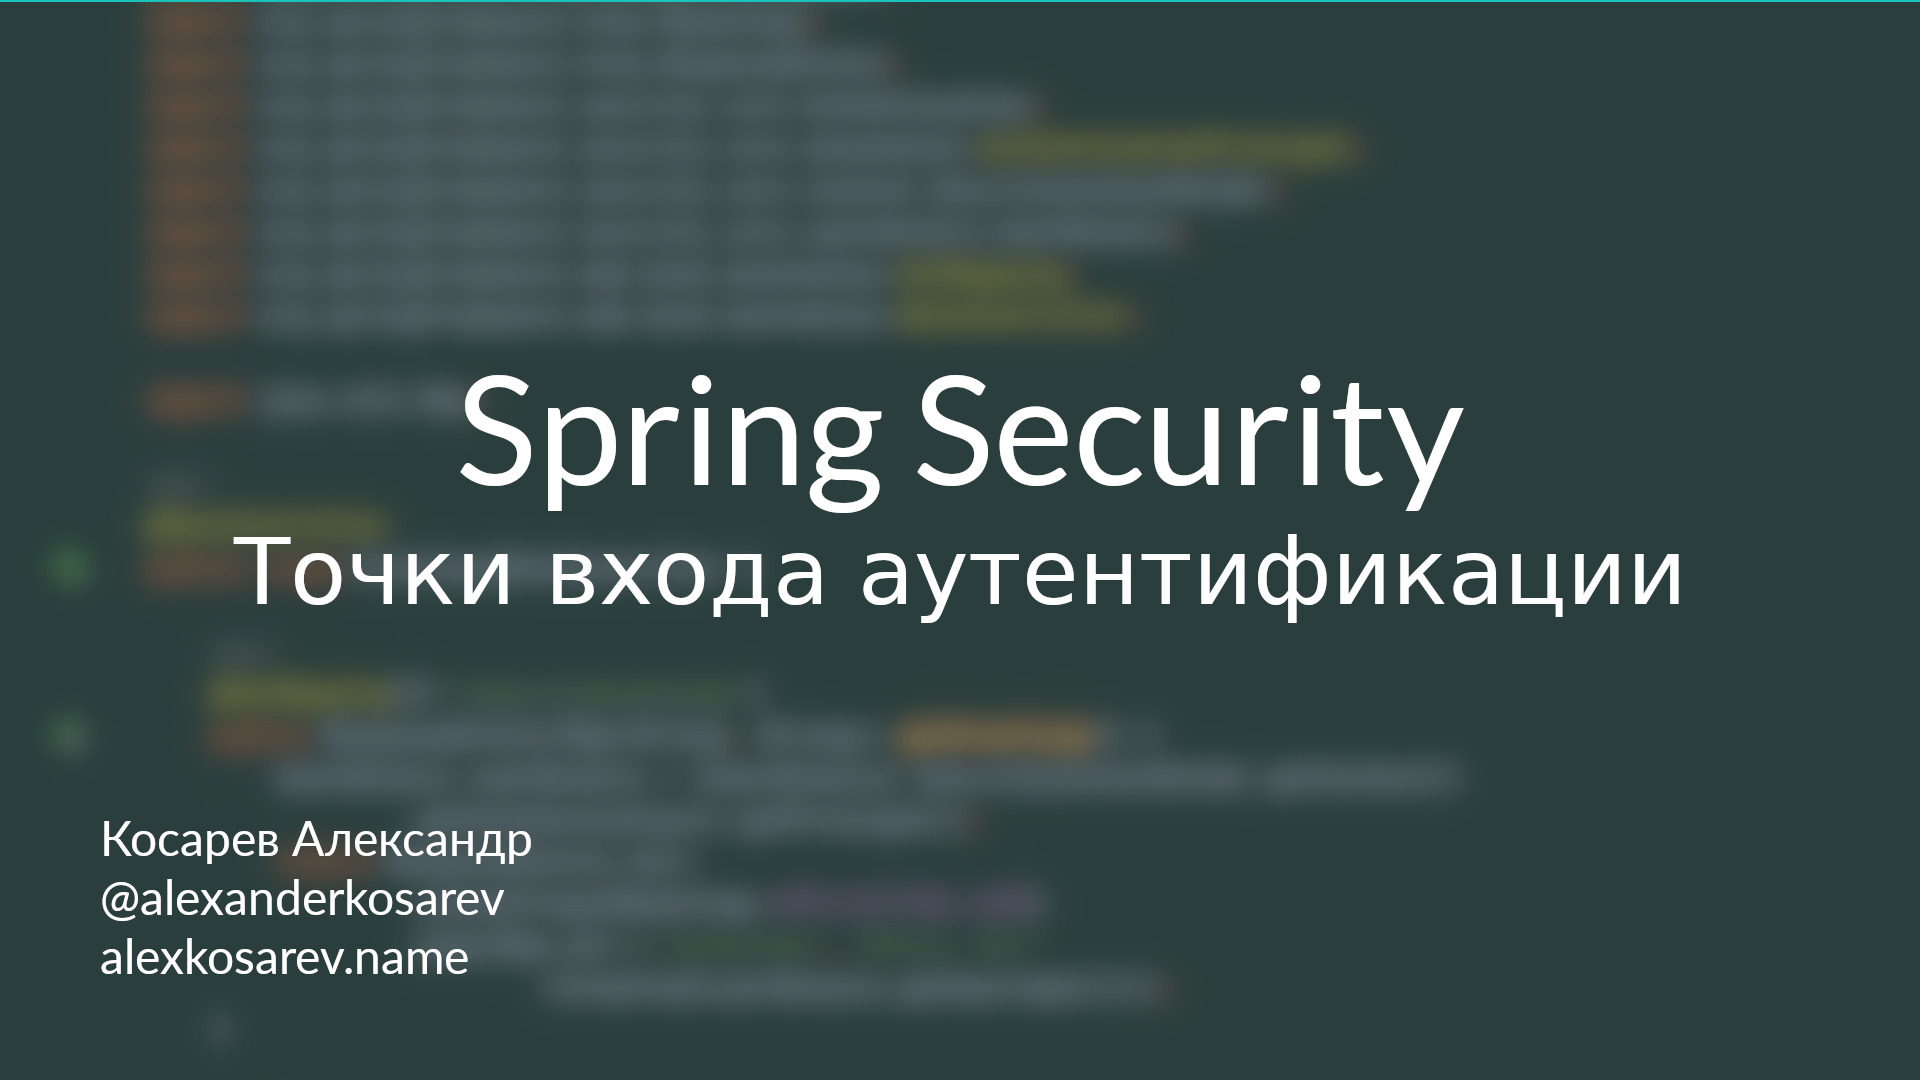 Точки входа аутентификации - Spring Security в деталях